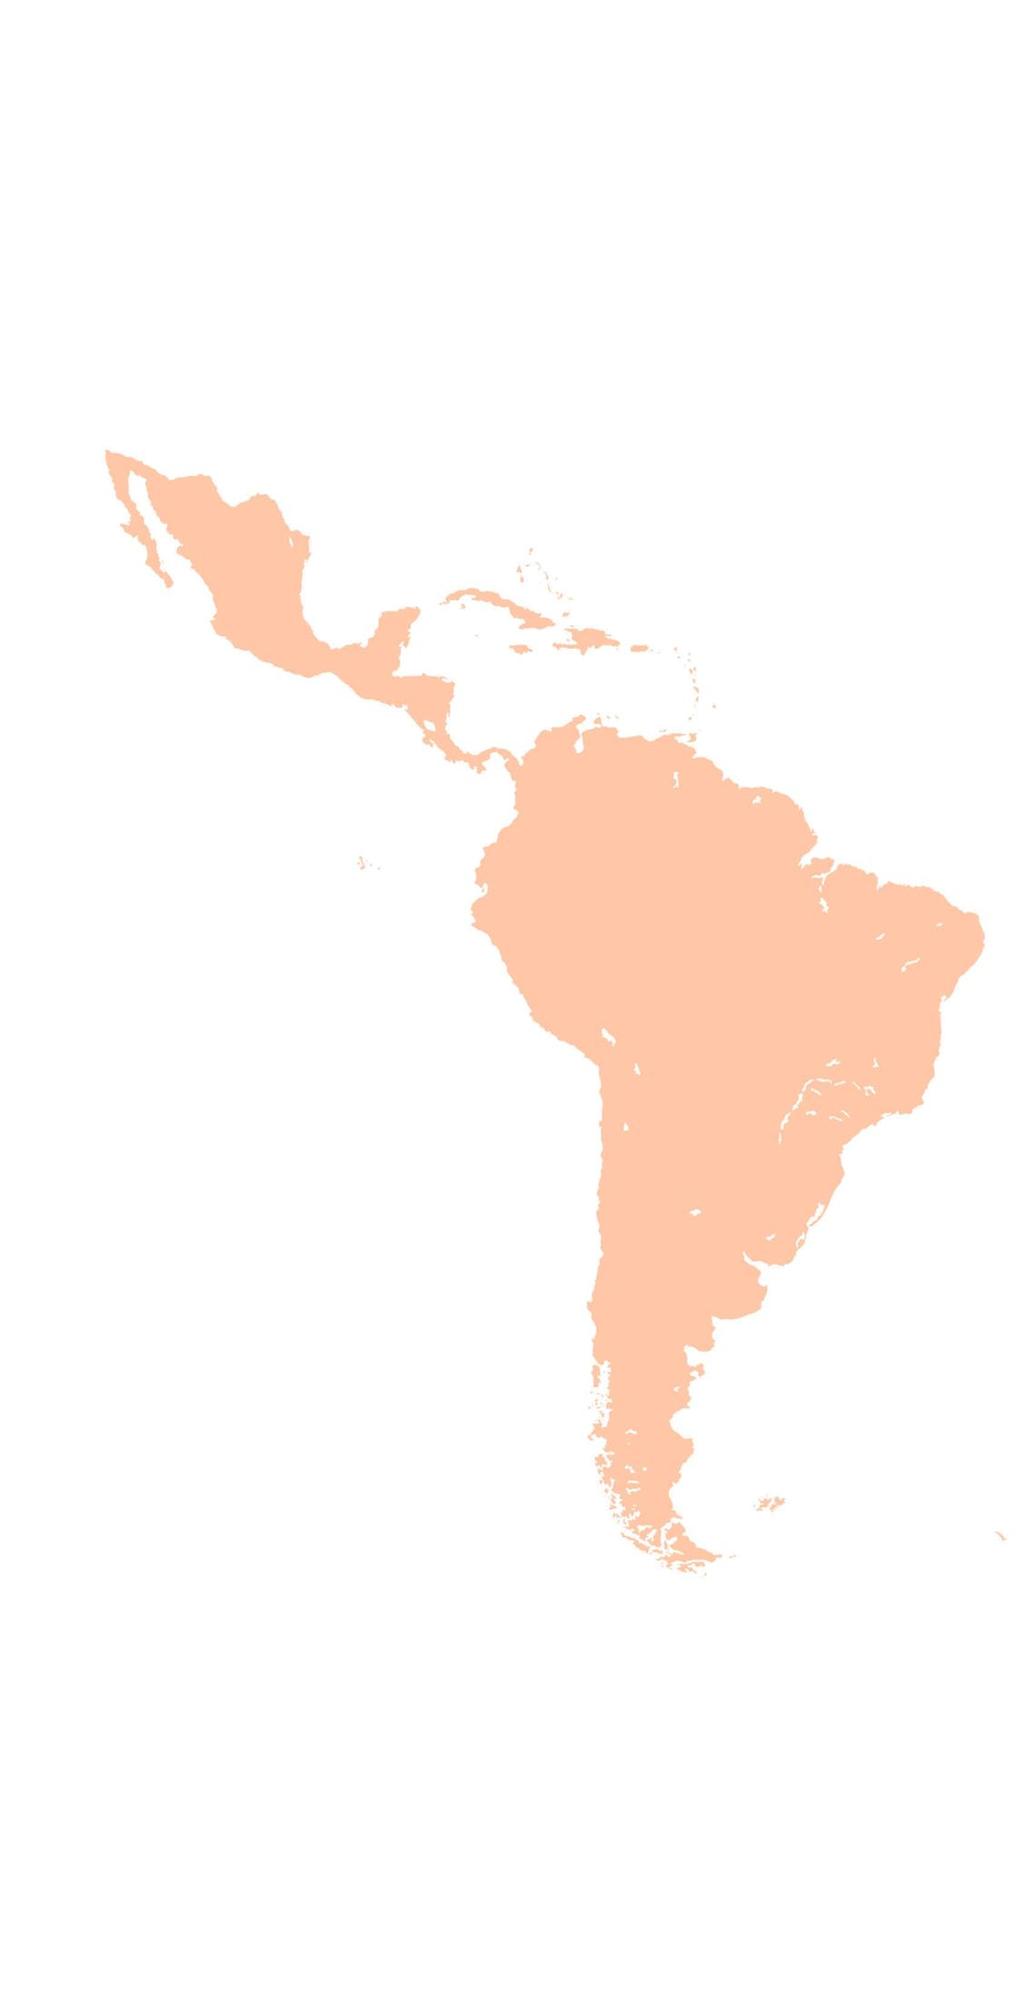 Evaluación de las Relaciones Económicas y de Cooperación entre Centroamérica, el Caribe y México